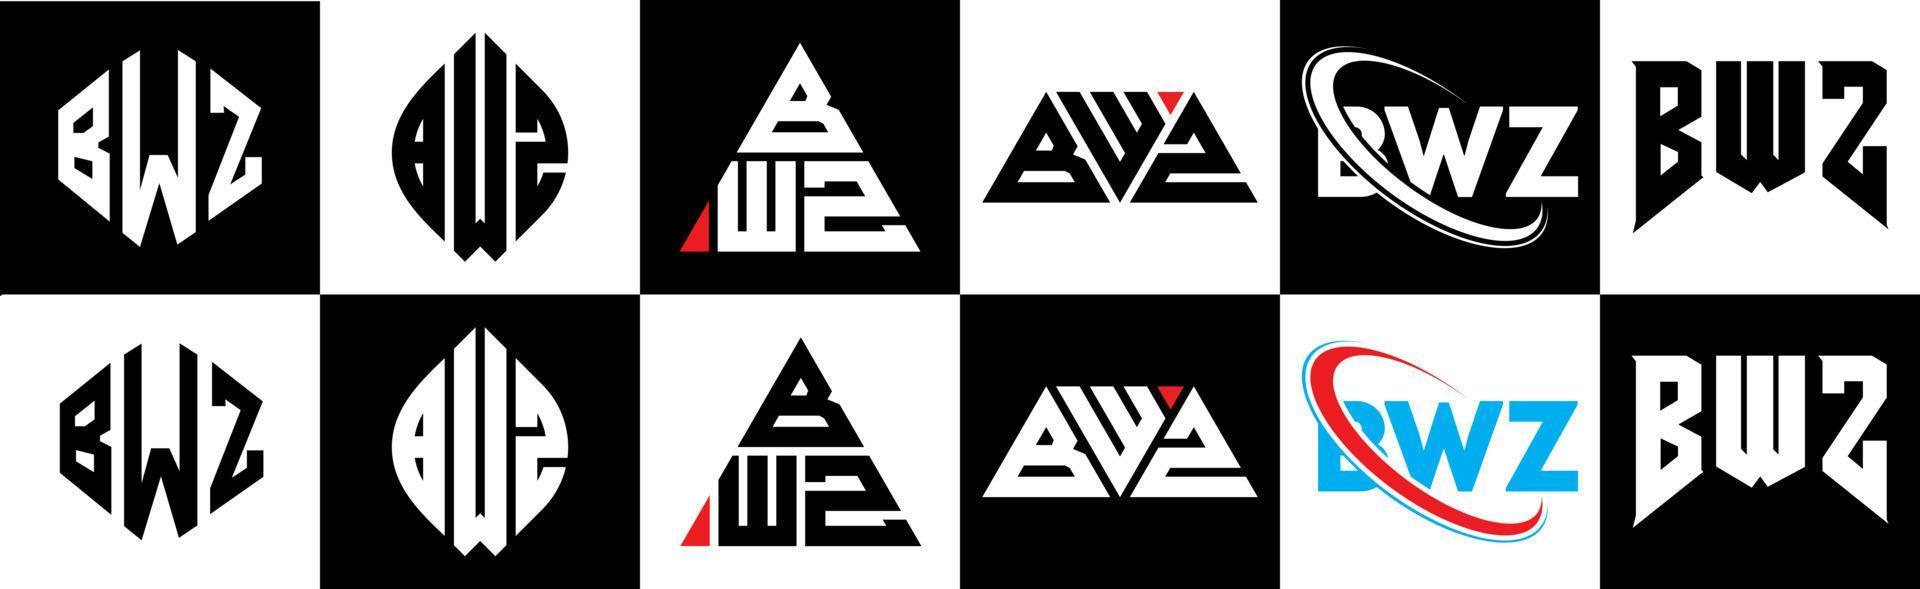 création de logo de lettre bwz en six styles. polygone bwz, cercle, triangle, hexagone, style plat et simple avec logo de lettre de variation de couleur noir et blanc dans un plan de travail. logo minimaliste et classique bwz vecteur